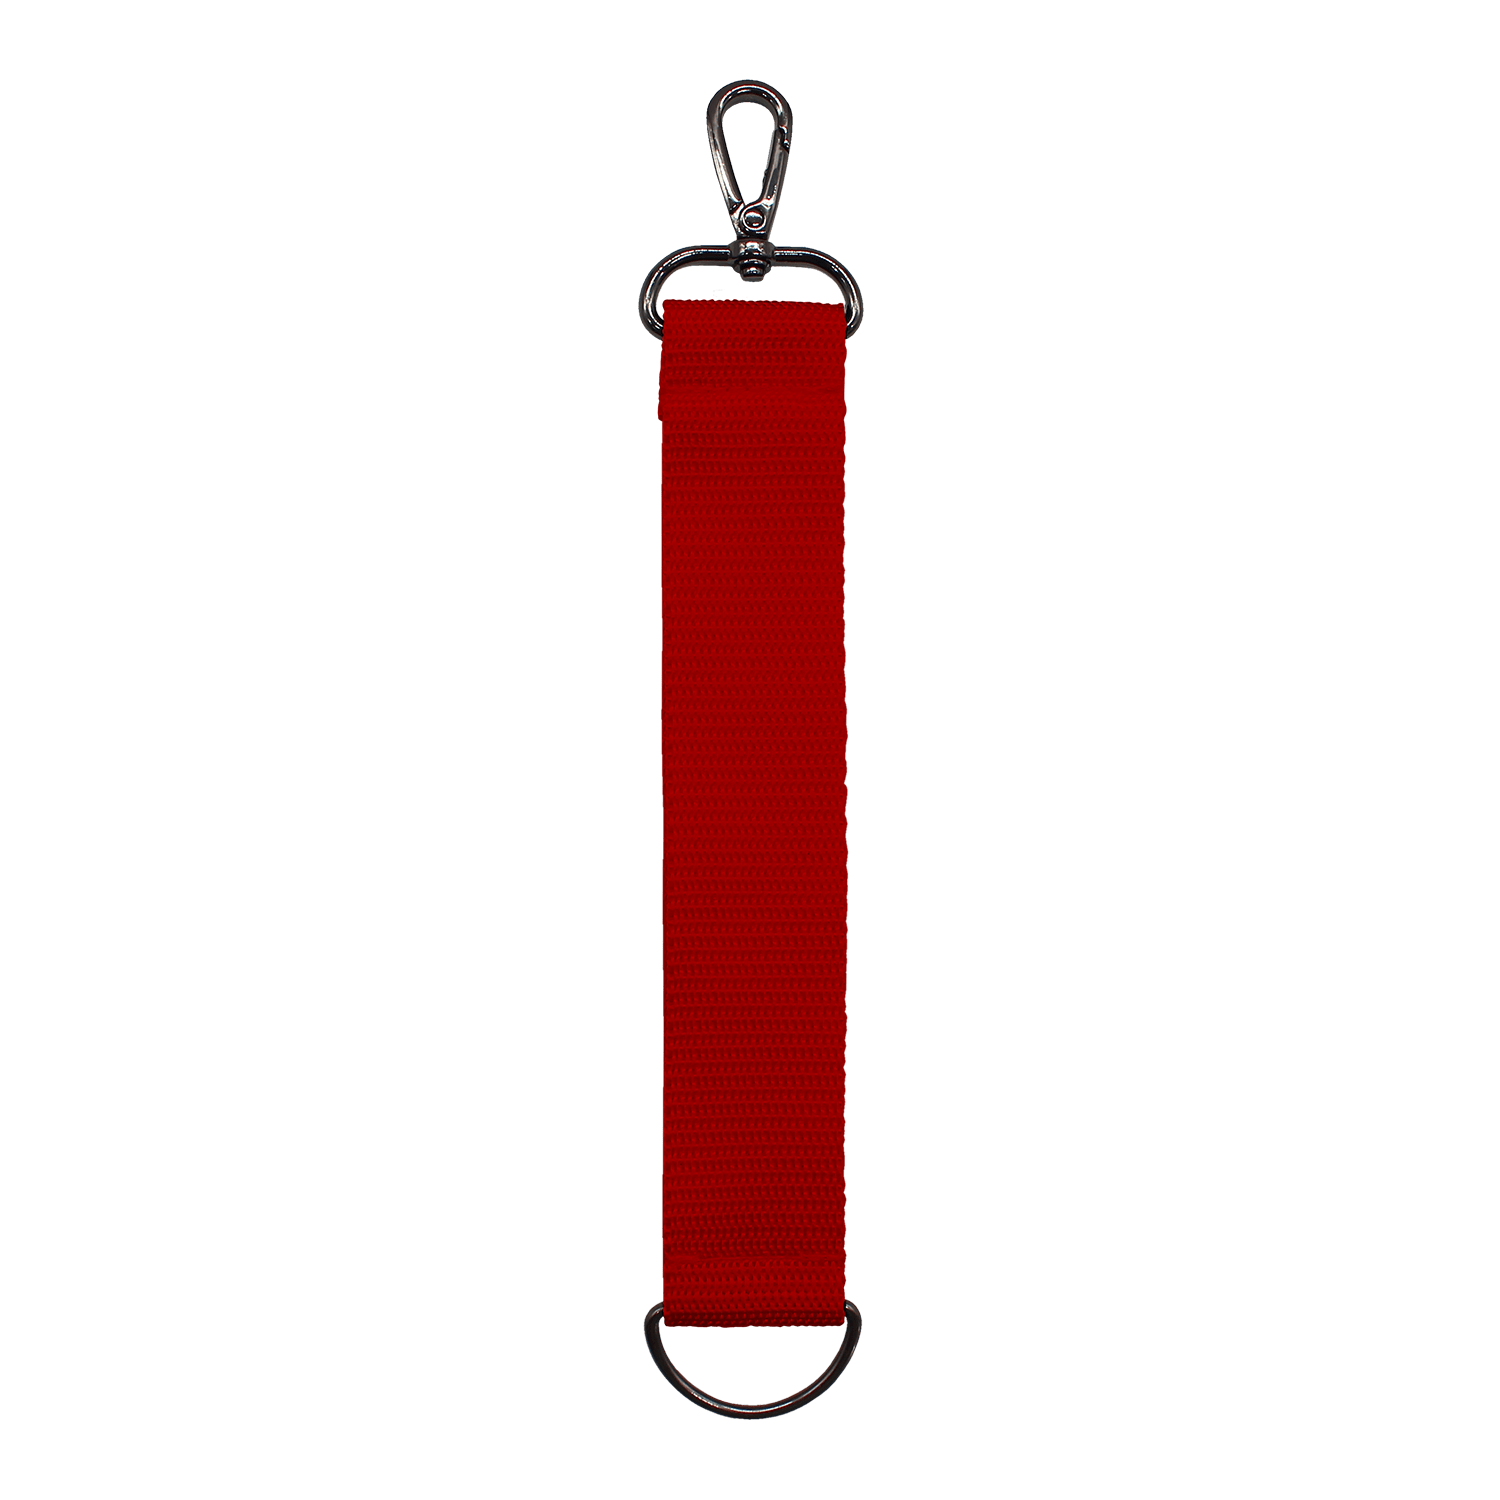 Ремувка 4sb с полукольцом (красный), красный, полиэстер